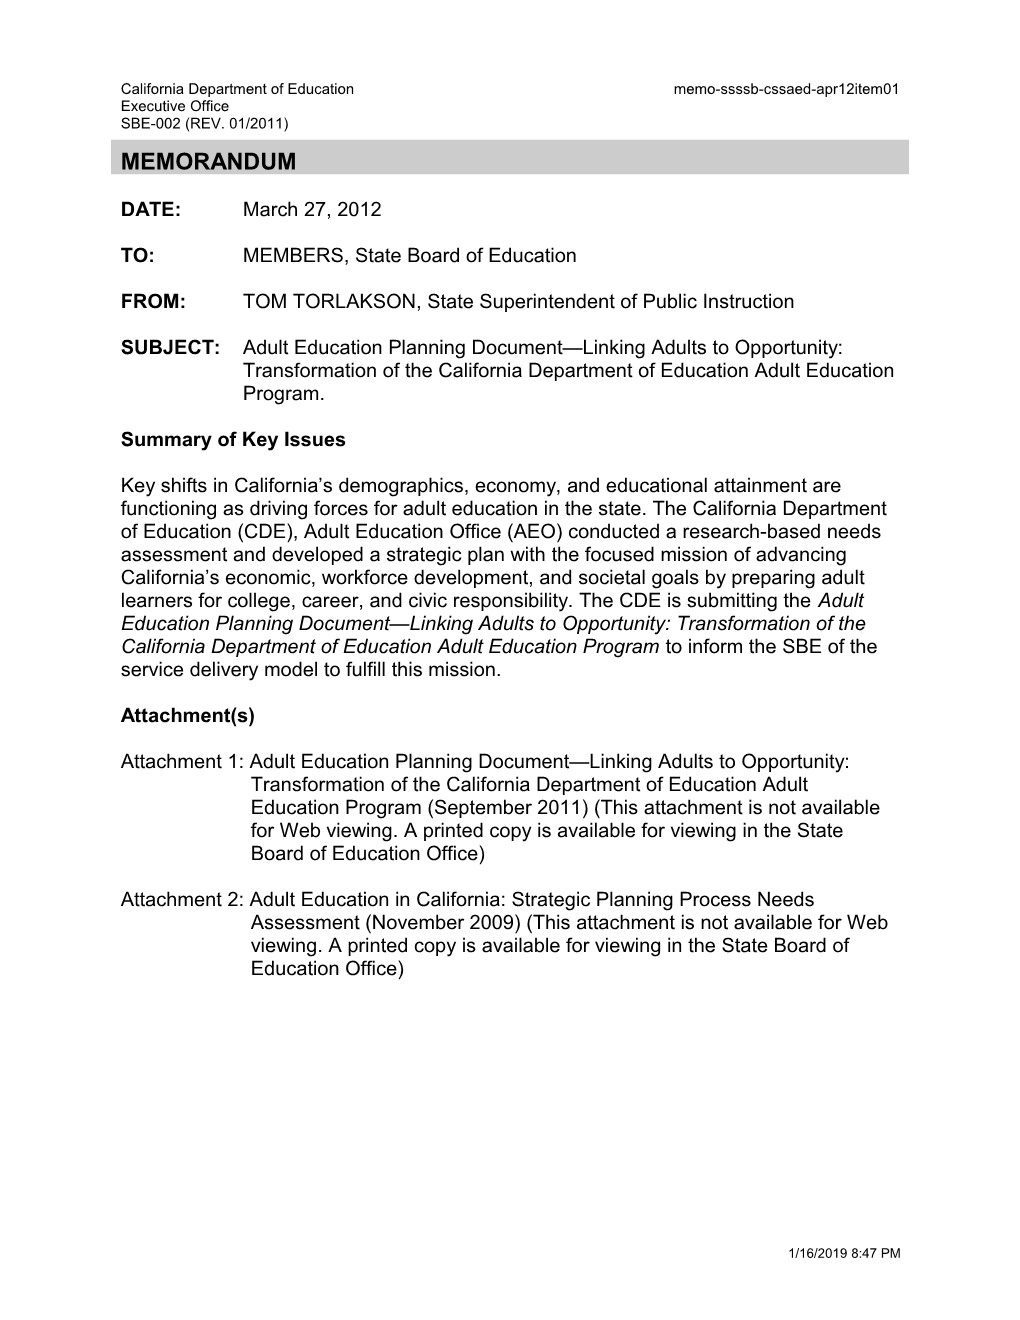 April 2012 Memorandum CSSAED Item 1 - Information Memorandum (CA State Board of Education)